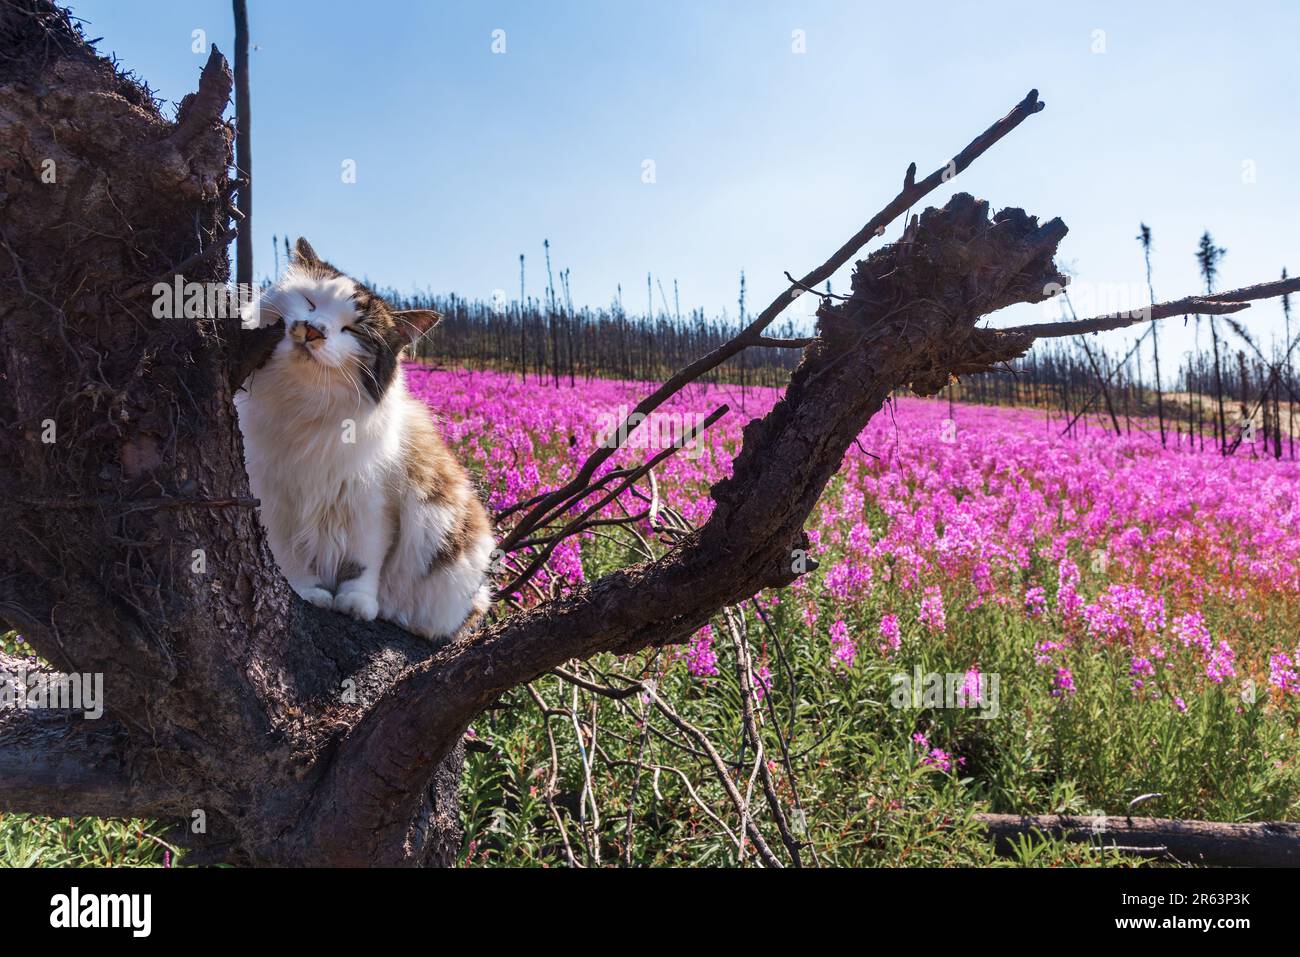 Haustier Katze reibt Gesicht auf verbrannten Baum mit Feuerweed Blumen Sommerzeit in Nordkanada mit wunderschöner rosa, violetter Landschaft um die Katze Stockfoto